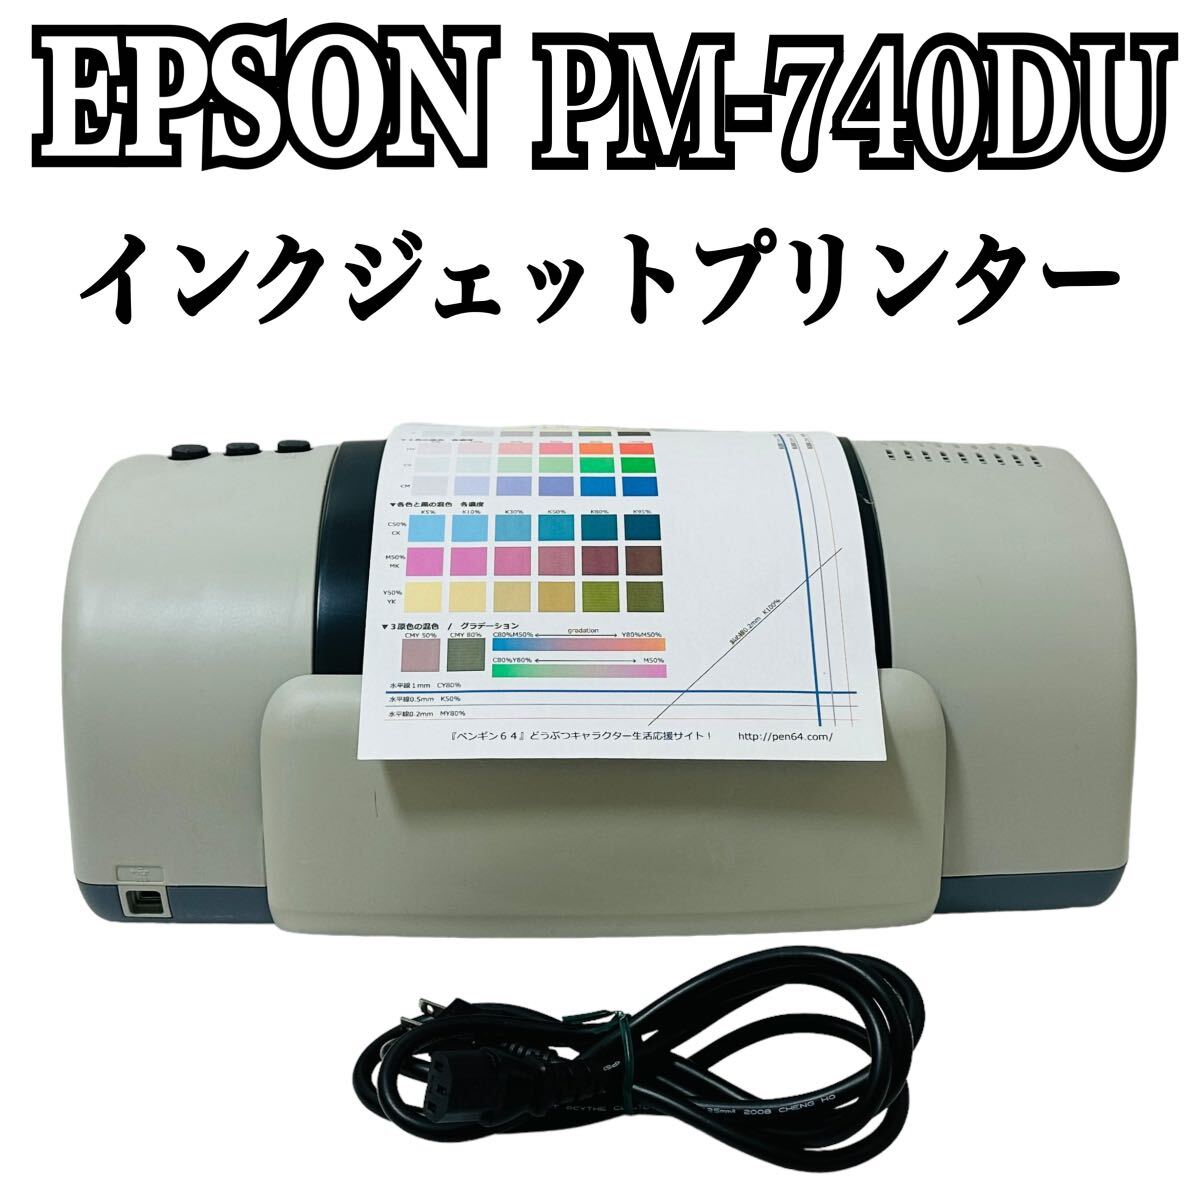 ★ 希少品 ★ EPSON エプソン Colorio カラリオ インクジェットプリンター PM-740DU プリンター インクジェット カラリオプリンター _画像1